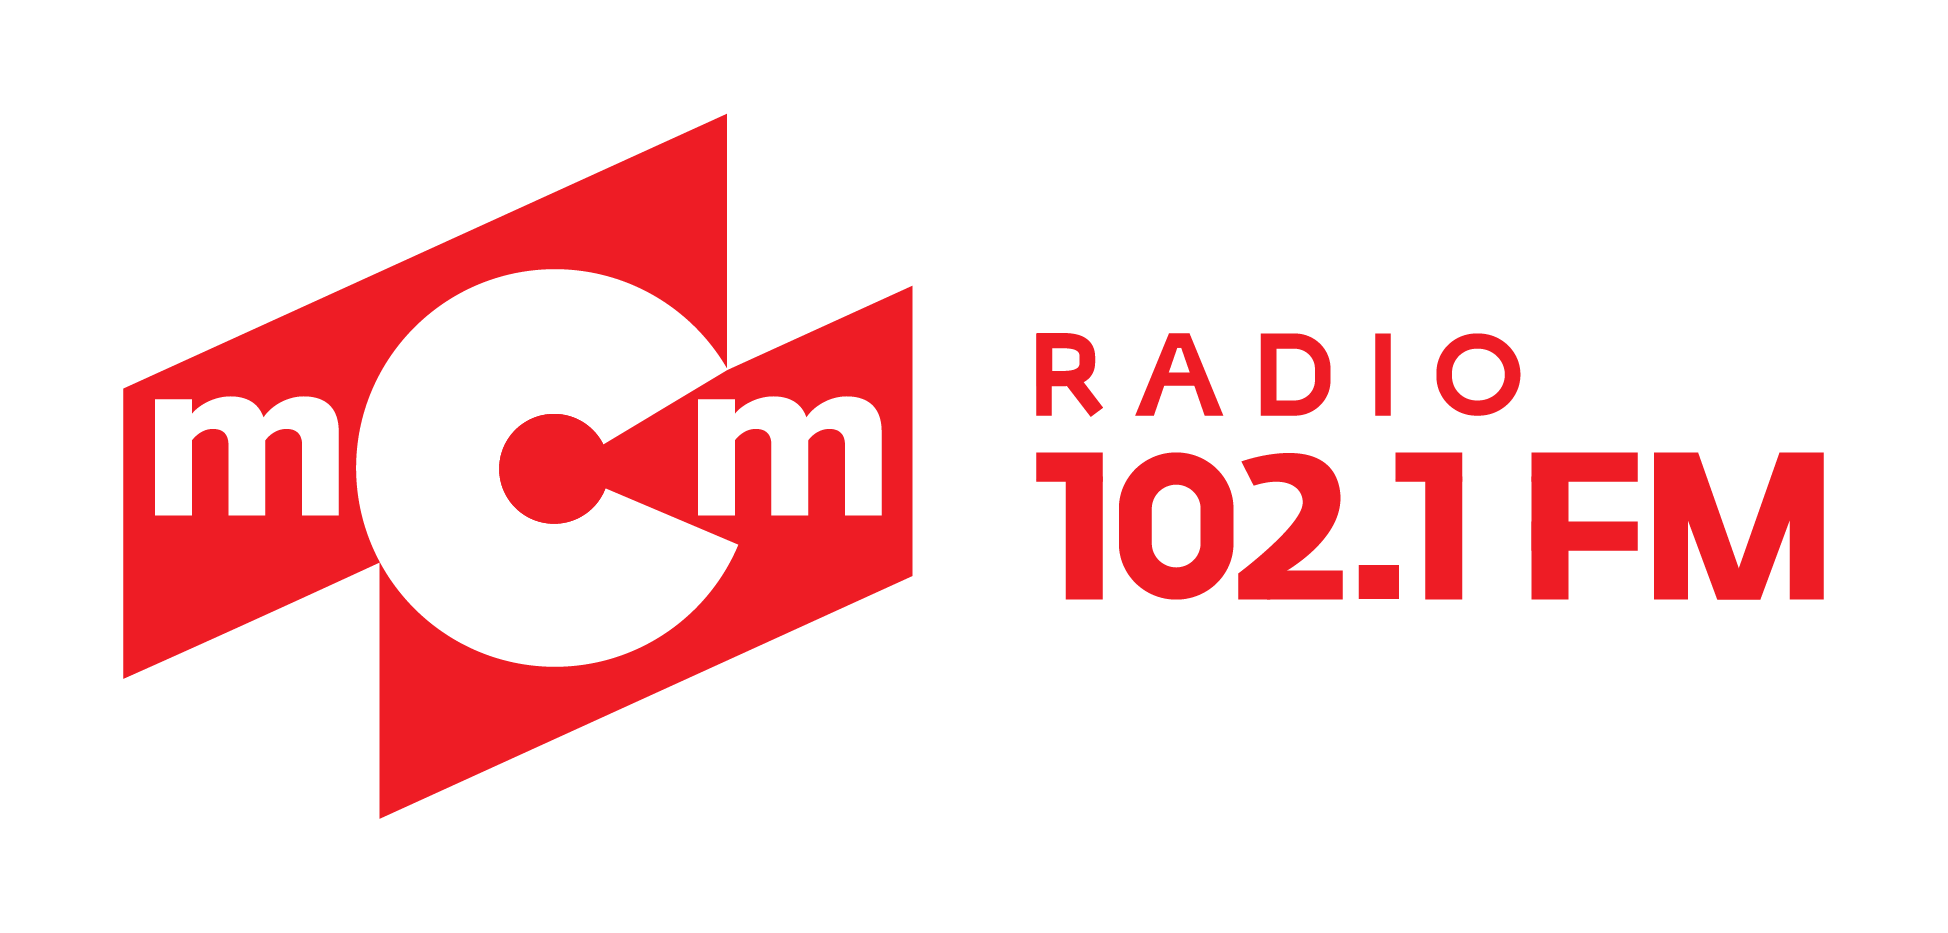 MCM радио. Радио МСМ логотип. МСМ радио Иркутск. Логотип радио МСМ 102.1.